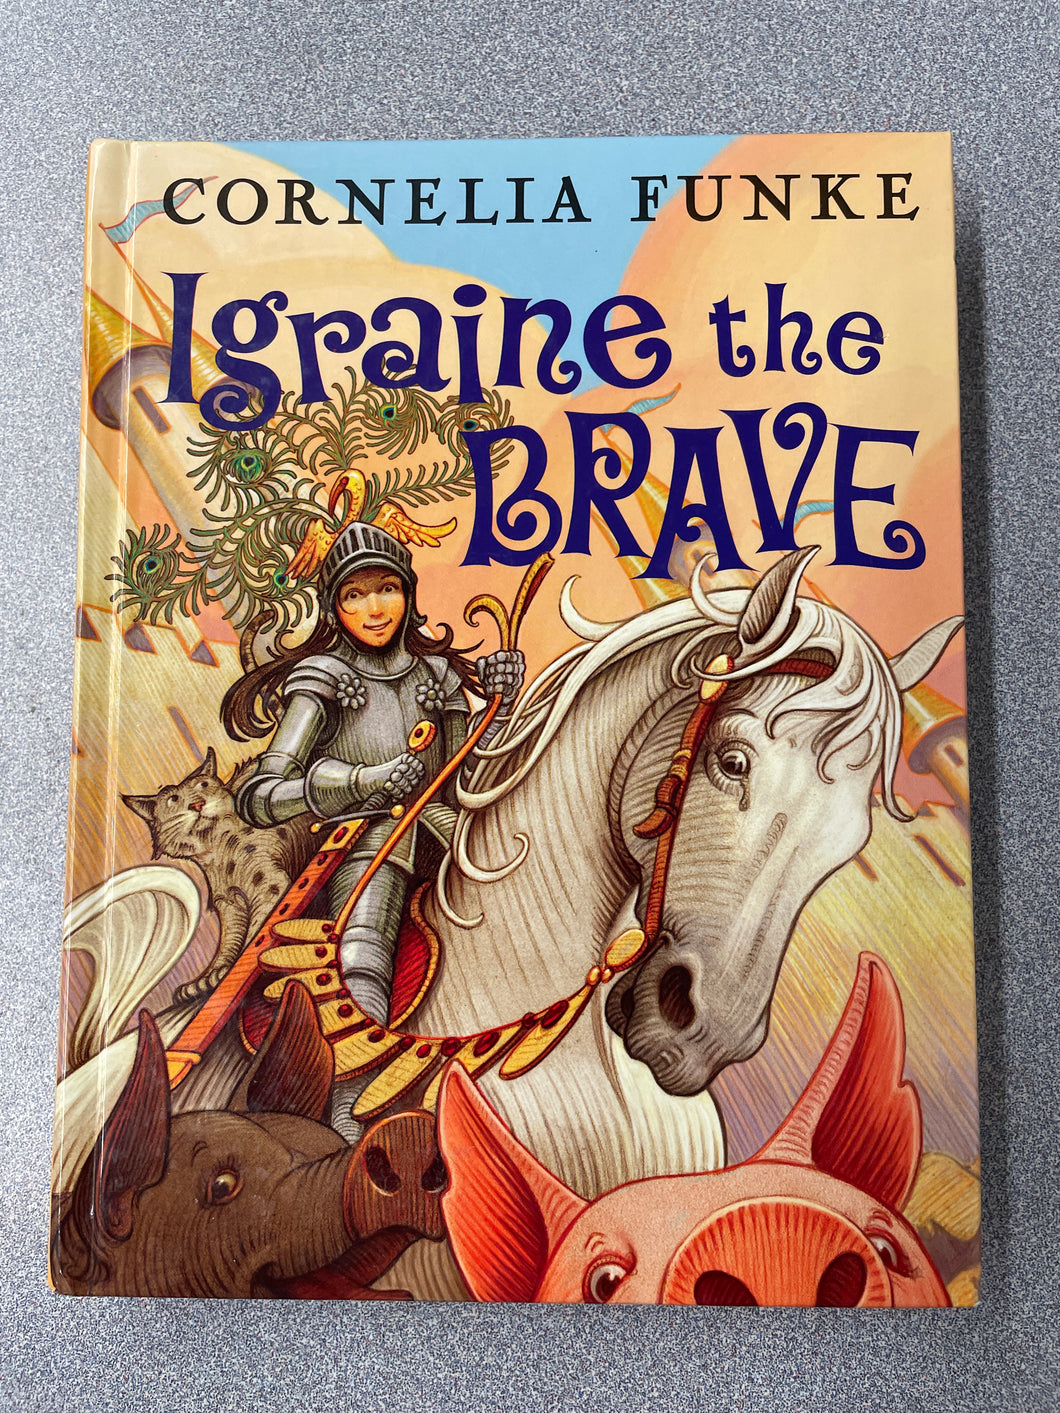 Funke, Cornelia,  Igraine, the Brave  [2007]  YF 10/23